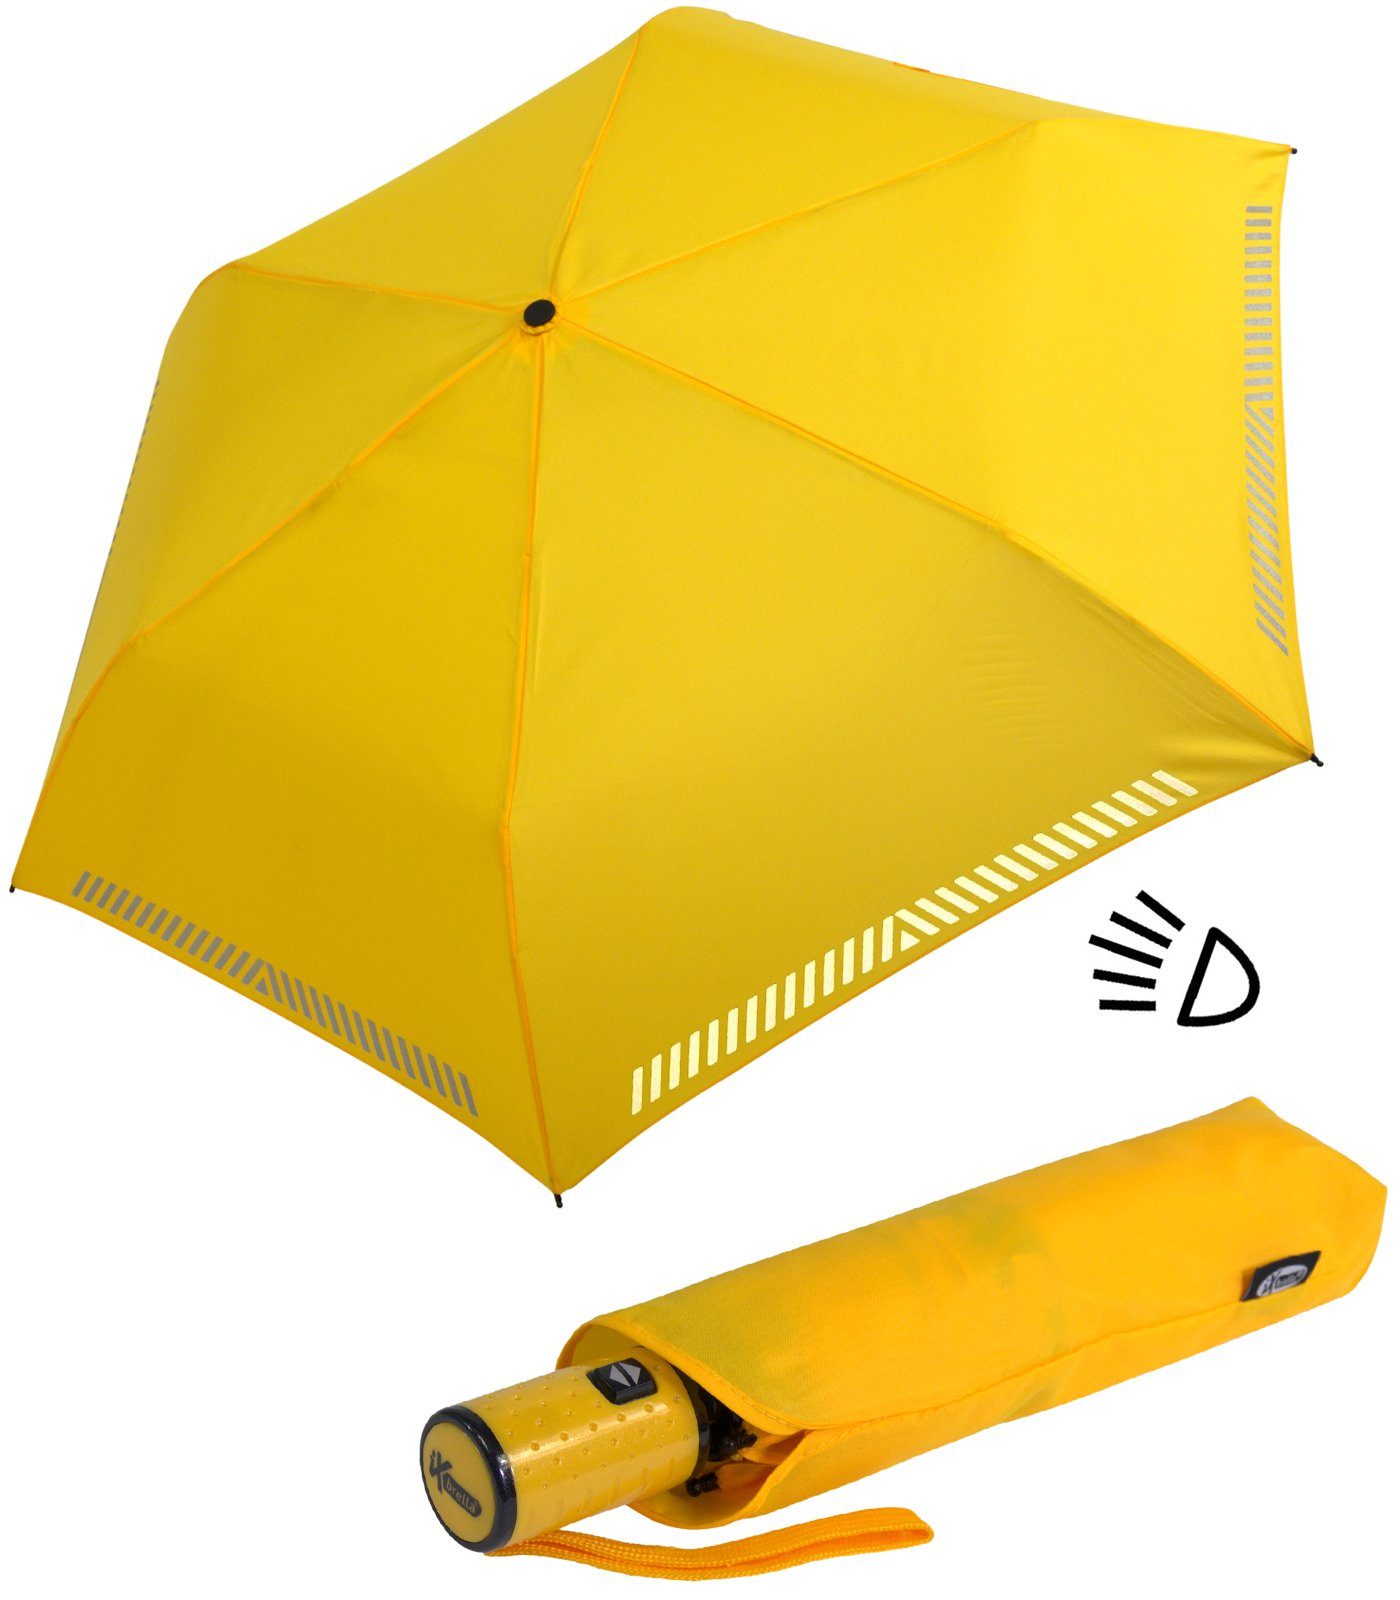 Versandhandel im Ausland iX-brella Taschenregenschirm Kinderschirm mit Auf-Zu-Automatik, - reflektierend, Reflex-Streifen Sicherheit gelb durch